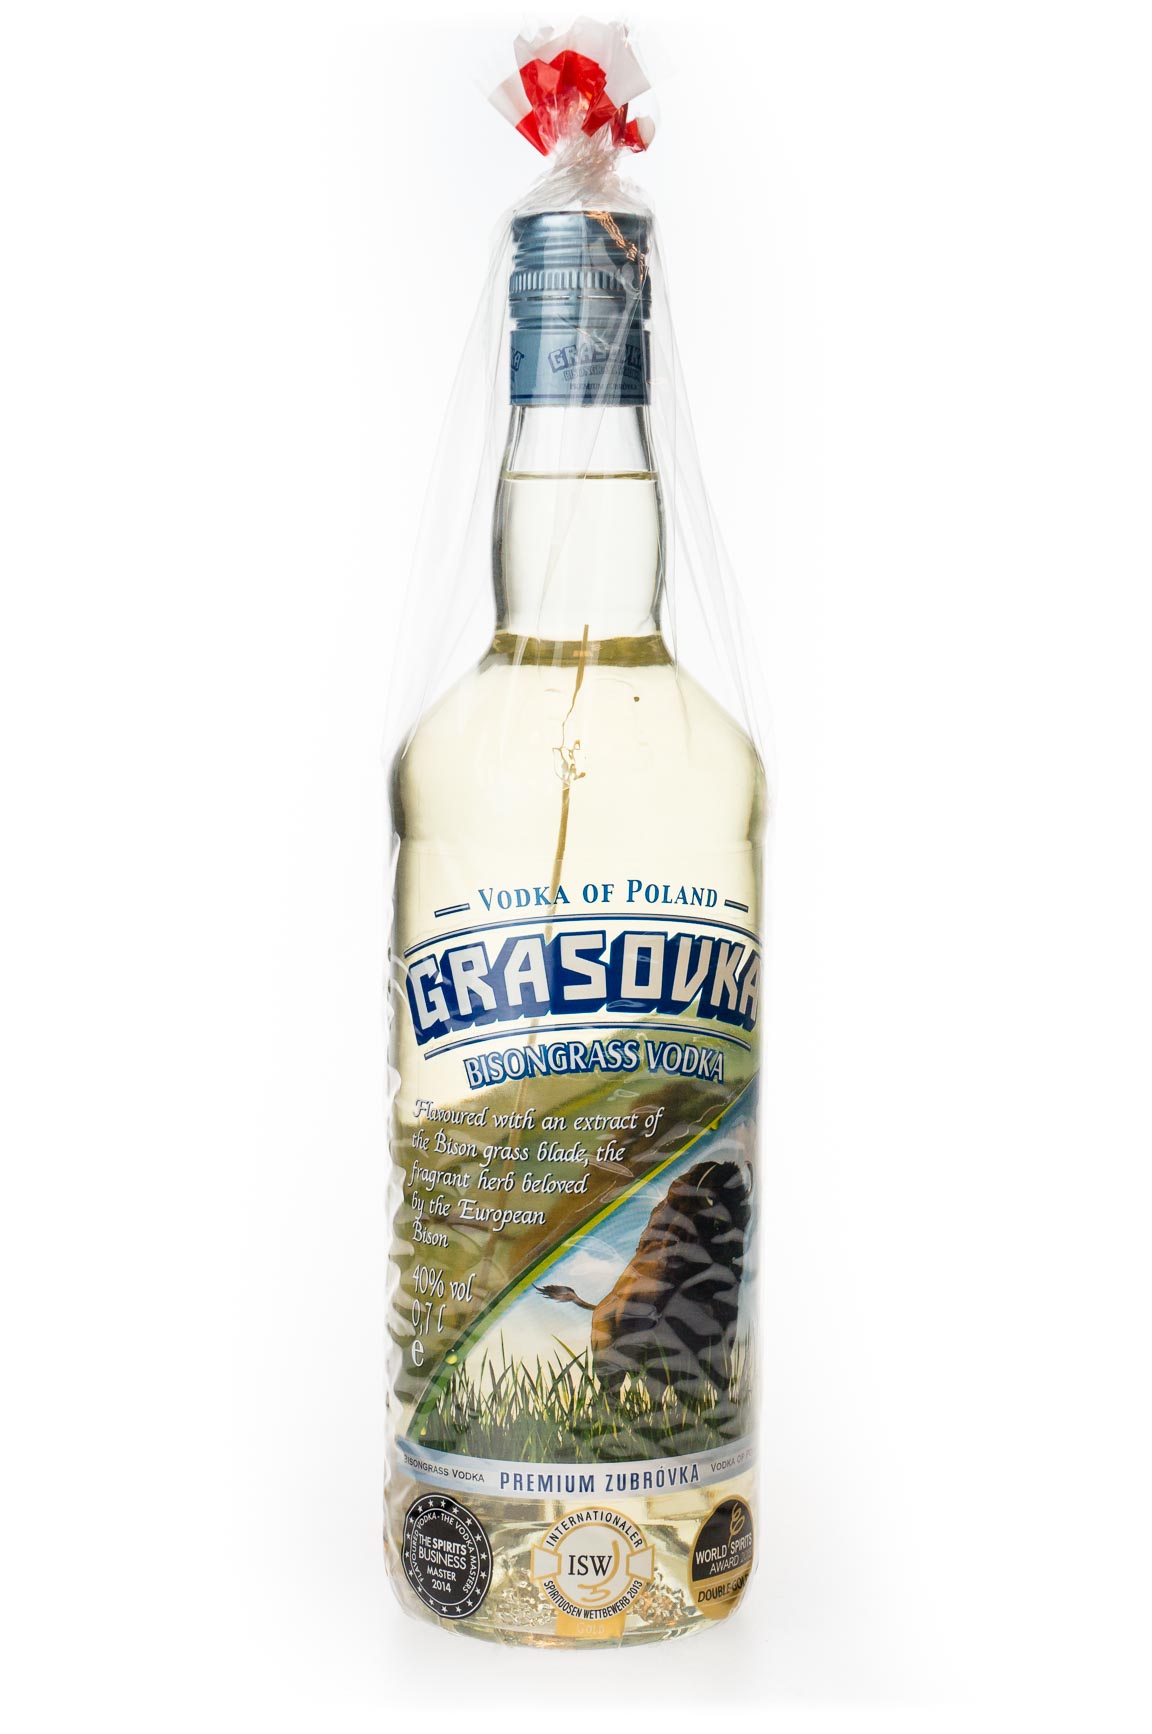 Grasovka Bisongrass Vodka günstig kaufen | Vodka